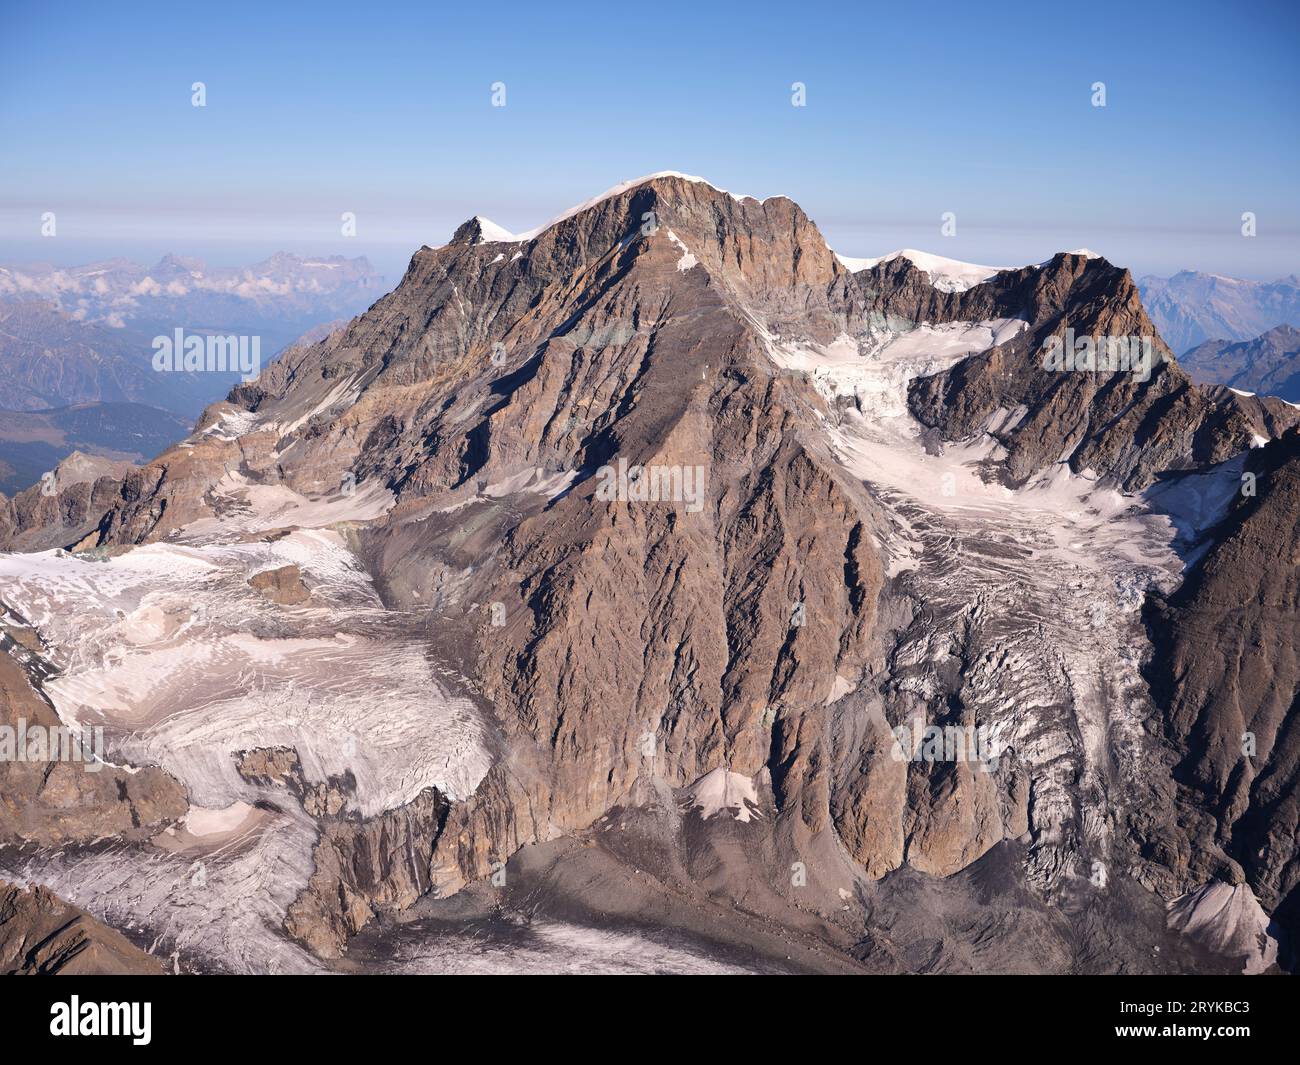 VUE AÉRIENNE. Grand Combin (altitude : 4314m à Combin de Grafeneire). Glacier du Mont Durand (à gauche) et Glacier du Croissant (à droite). Suisse. Banque D'Images